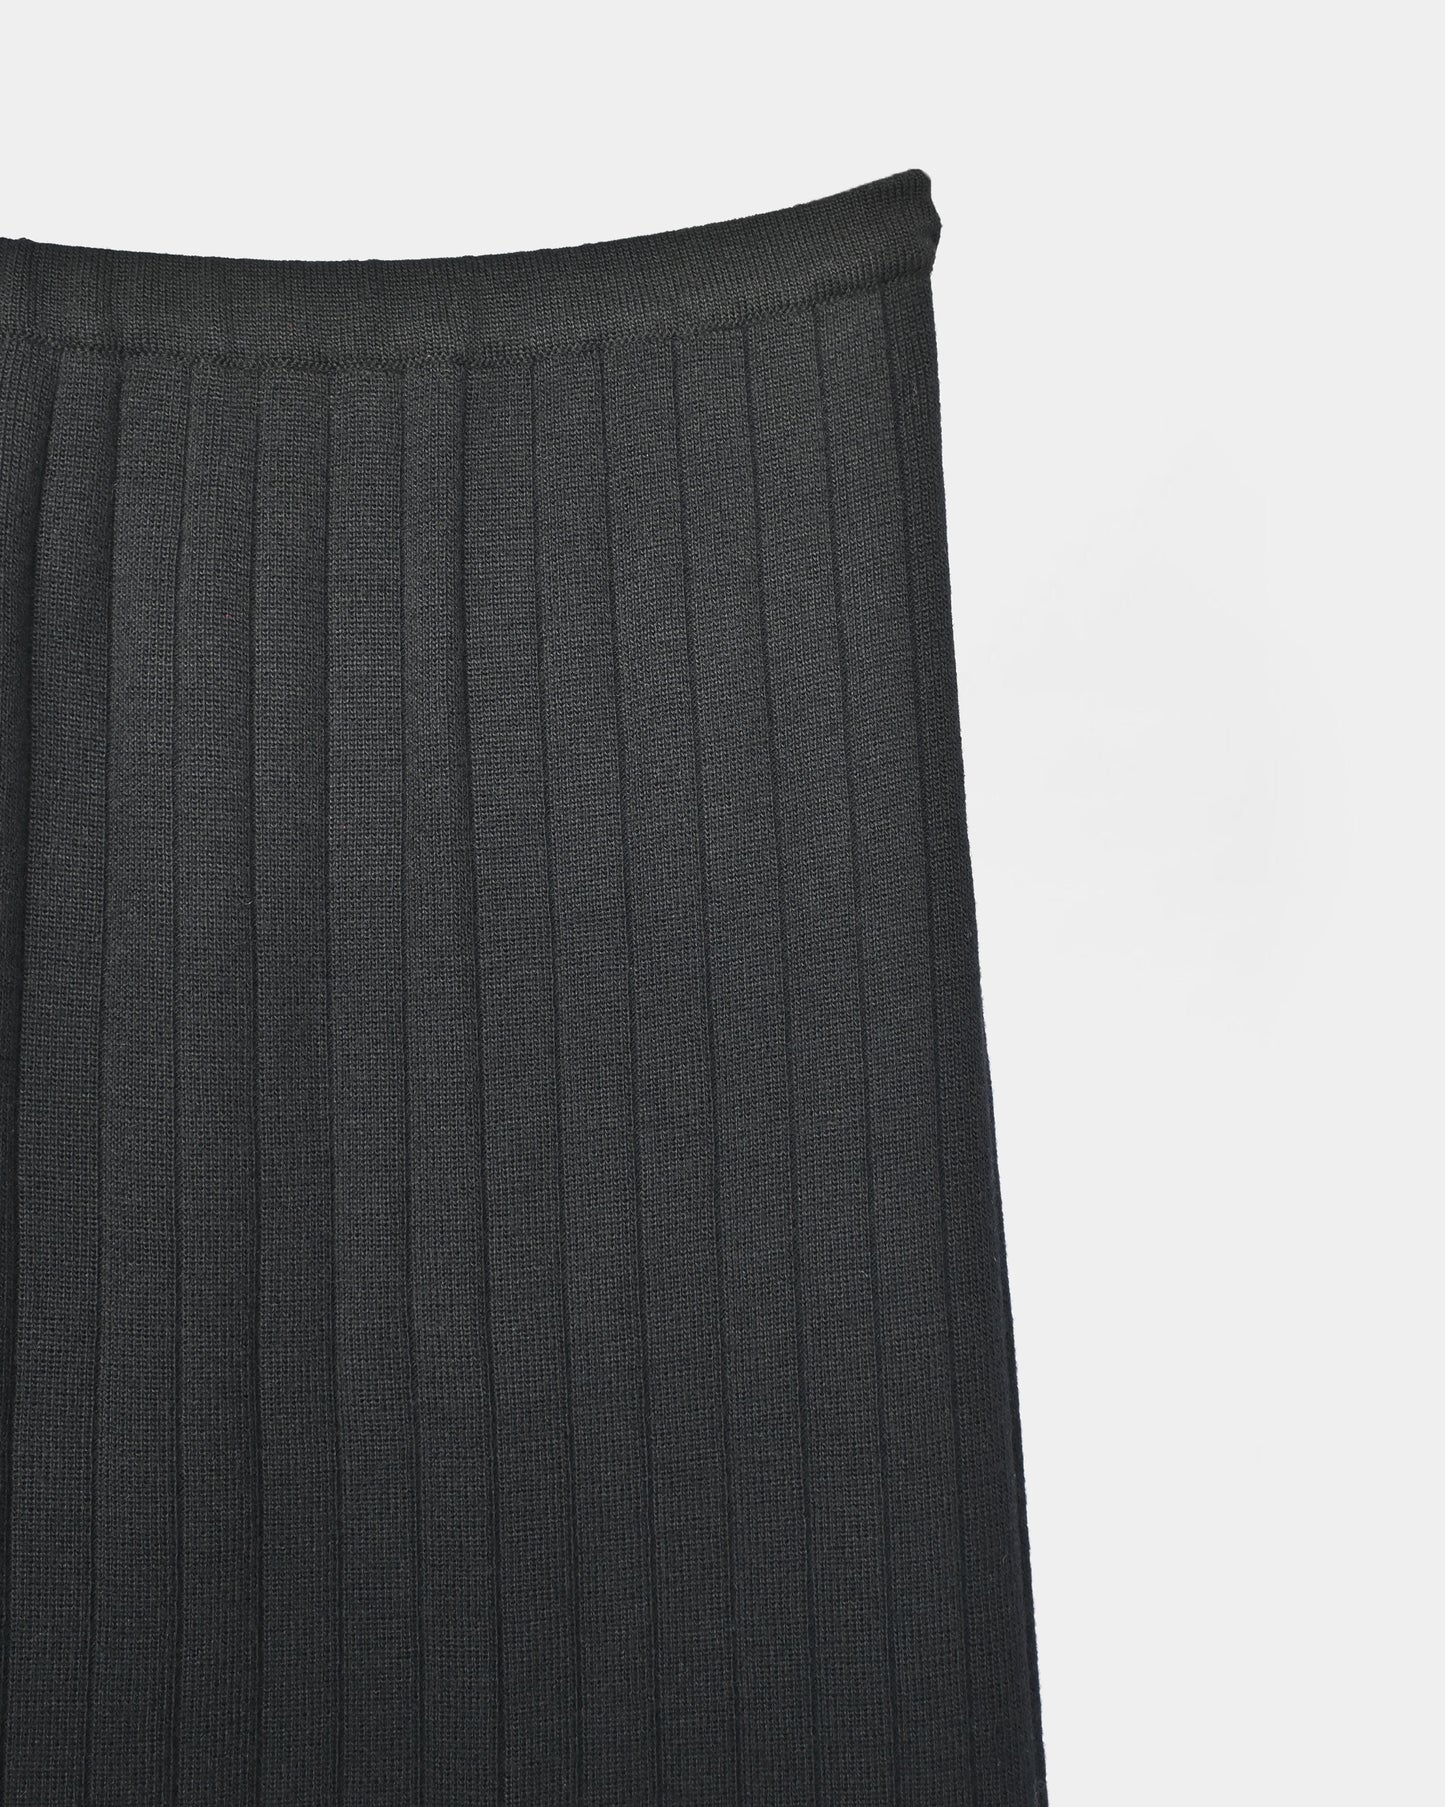 Black Knit Long Skirt